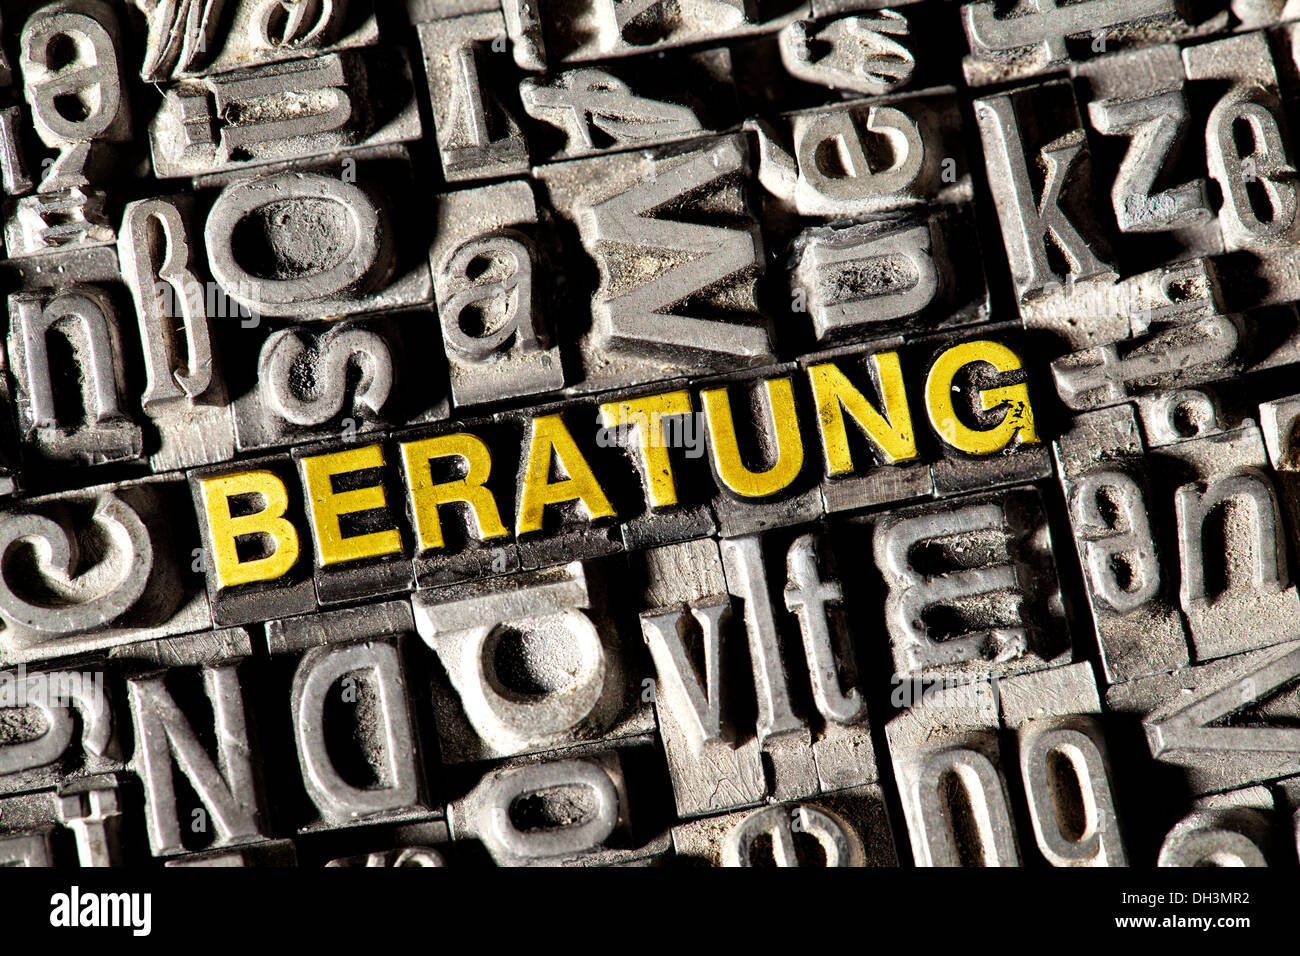 Antiguas letras de plomo que forman la palabra "BERATUNG', Alemán para el "asesoramiento" Foto de stock